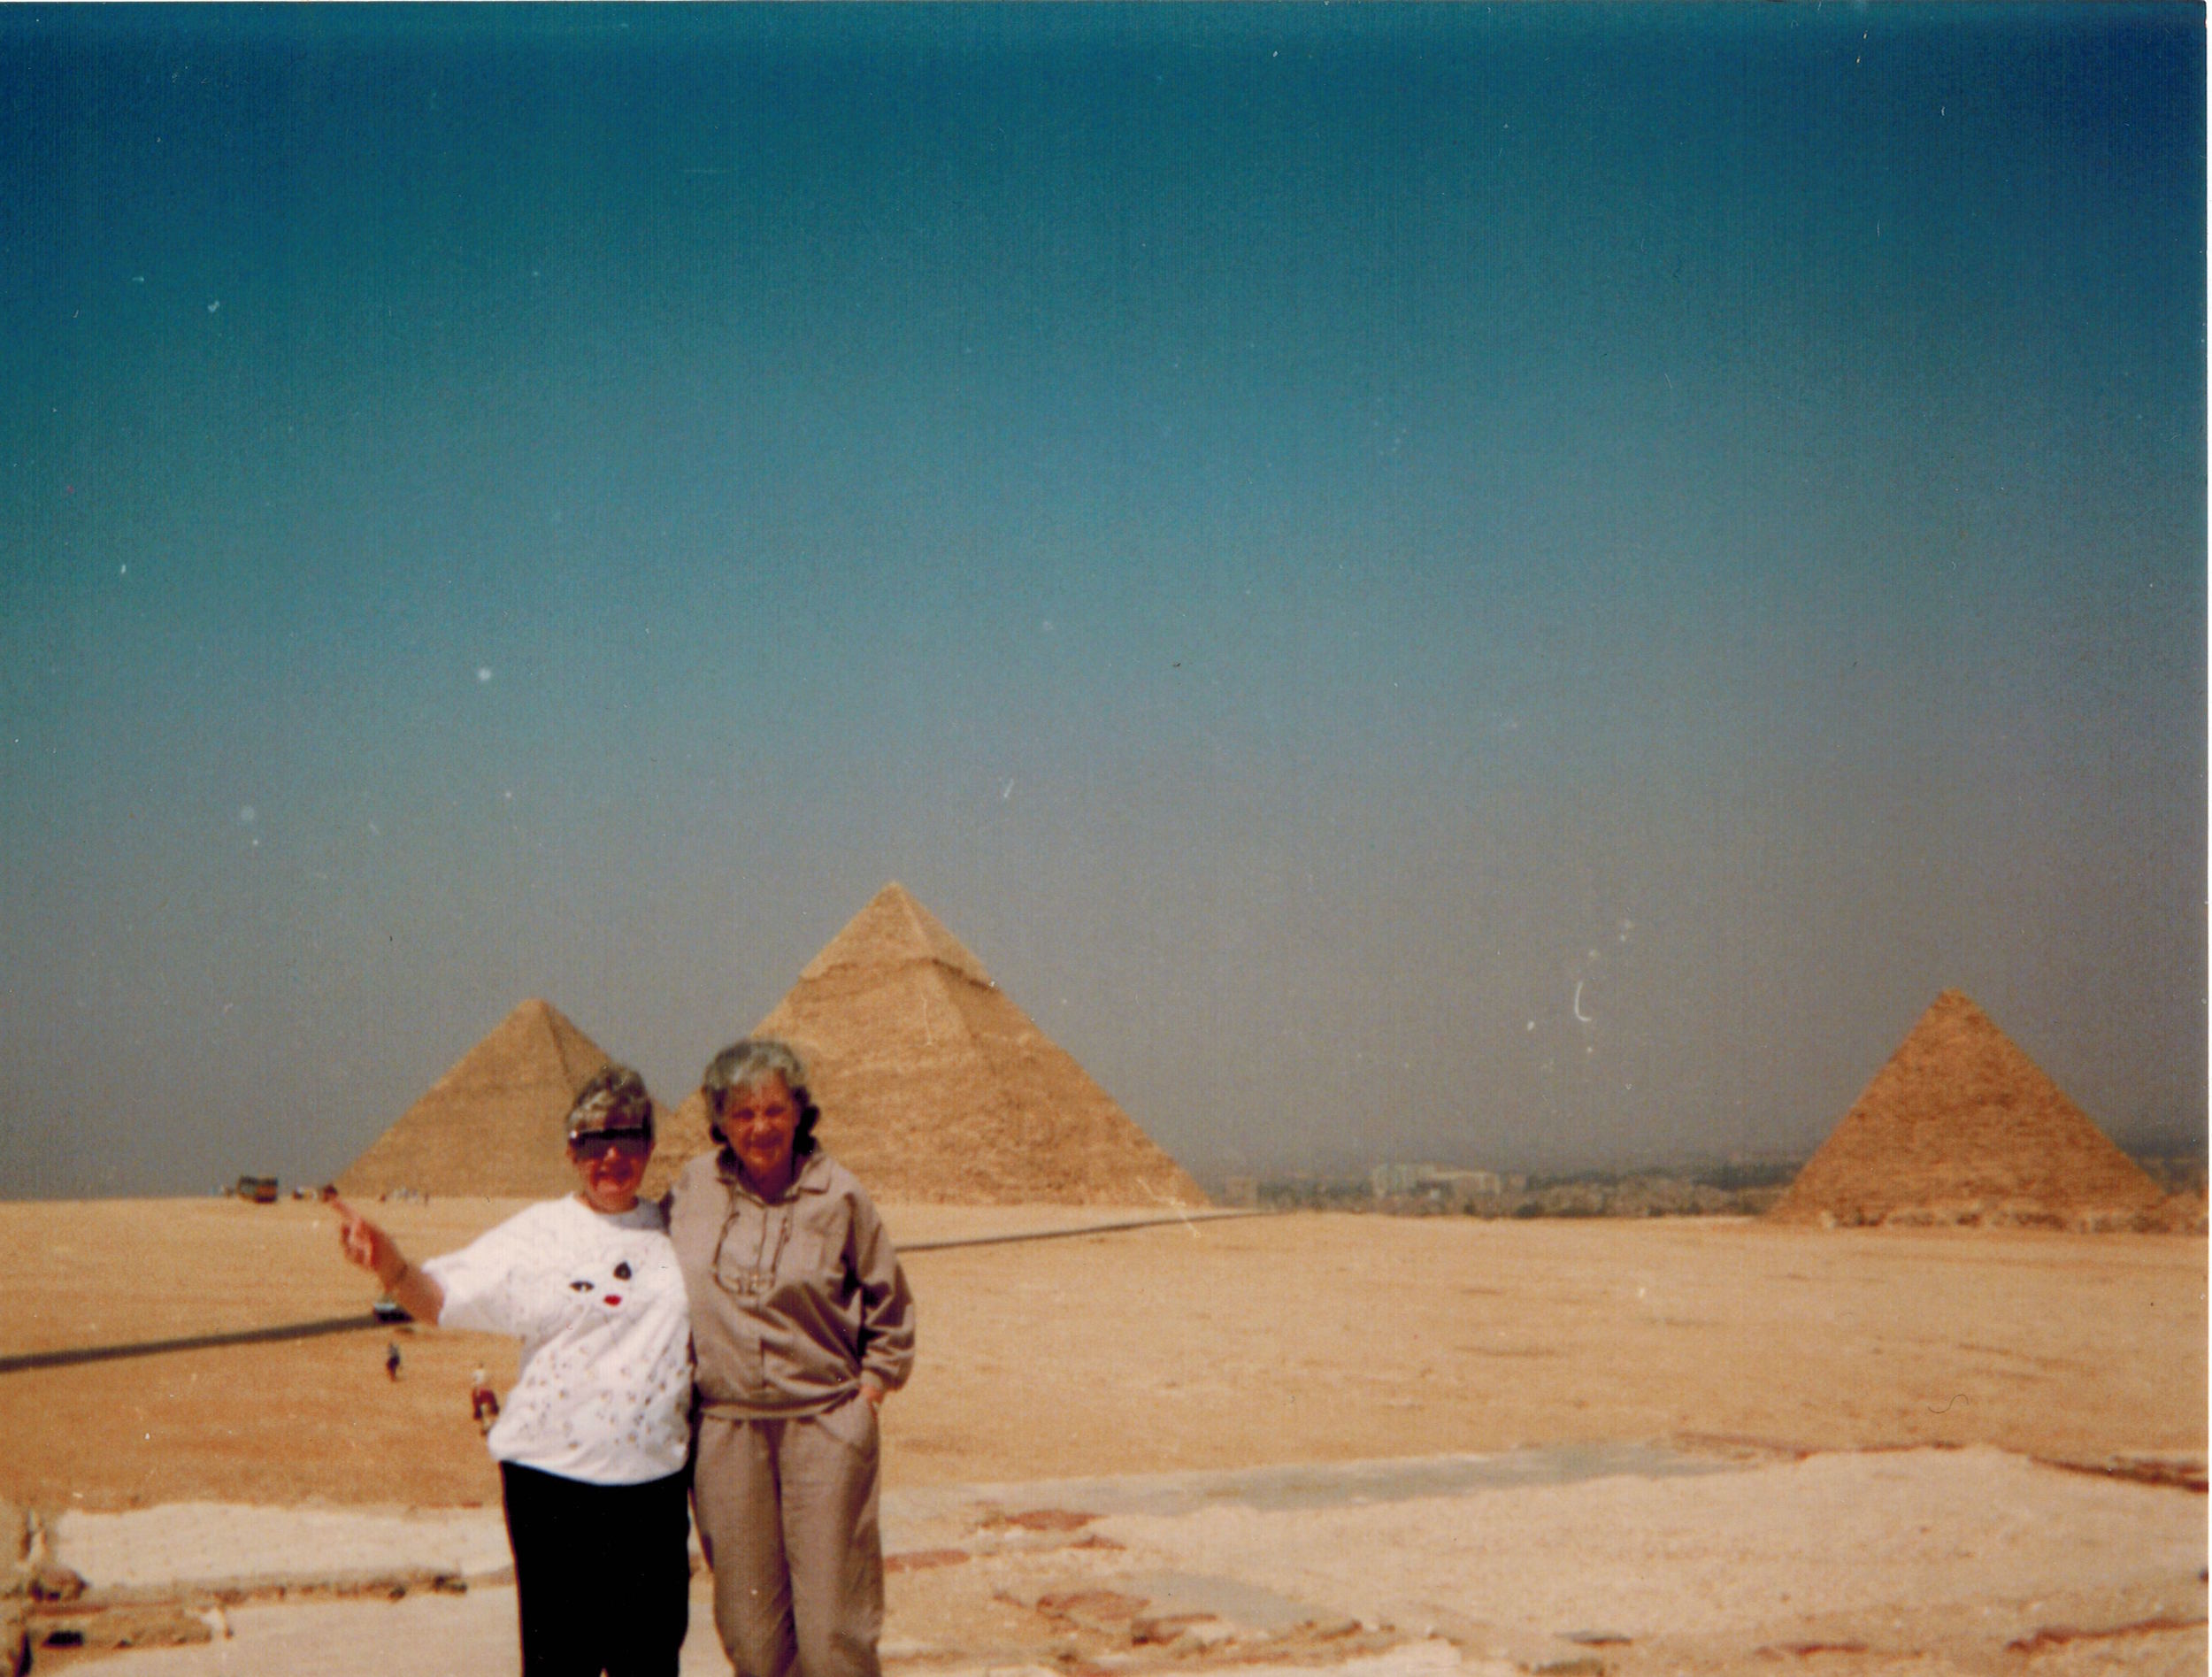 Wanda, Meg's Grandma, and Elaine, Julia's Nana, at the pyramids in Egypt in the late 1980s